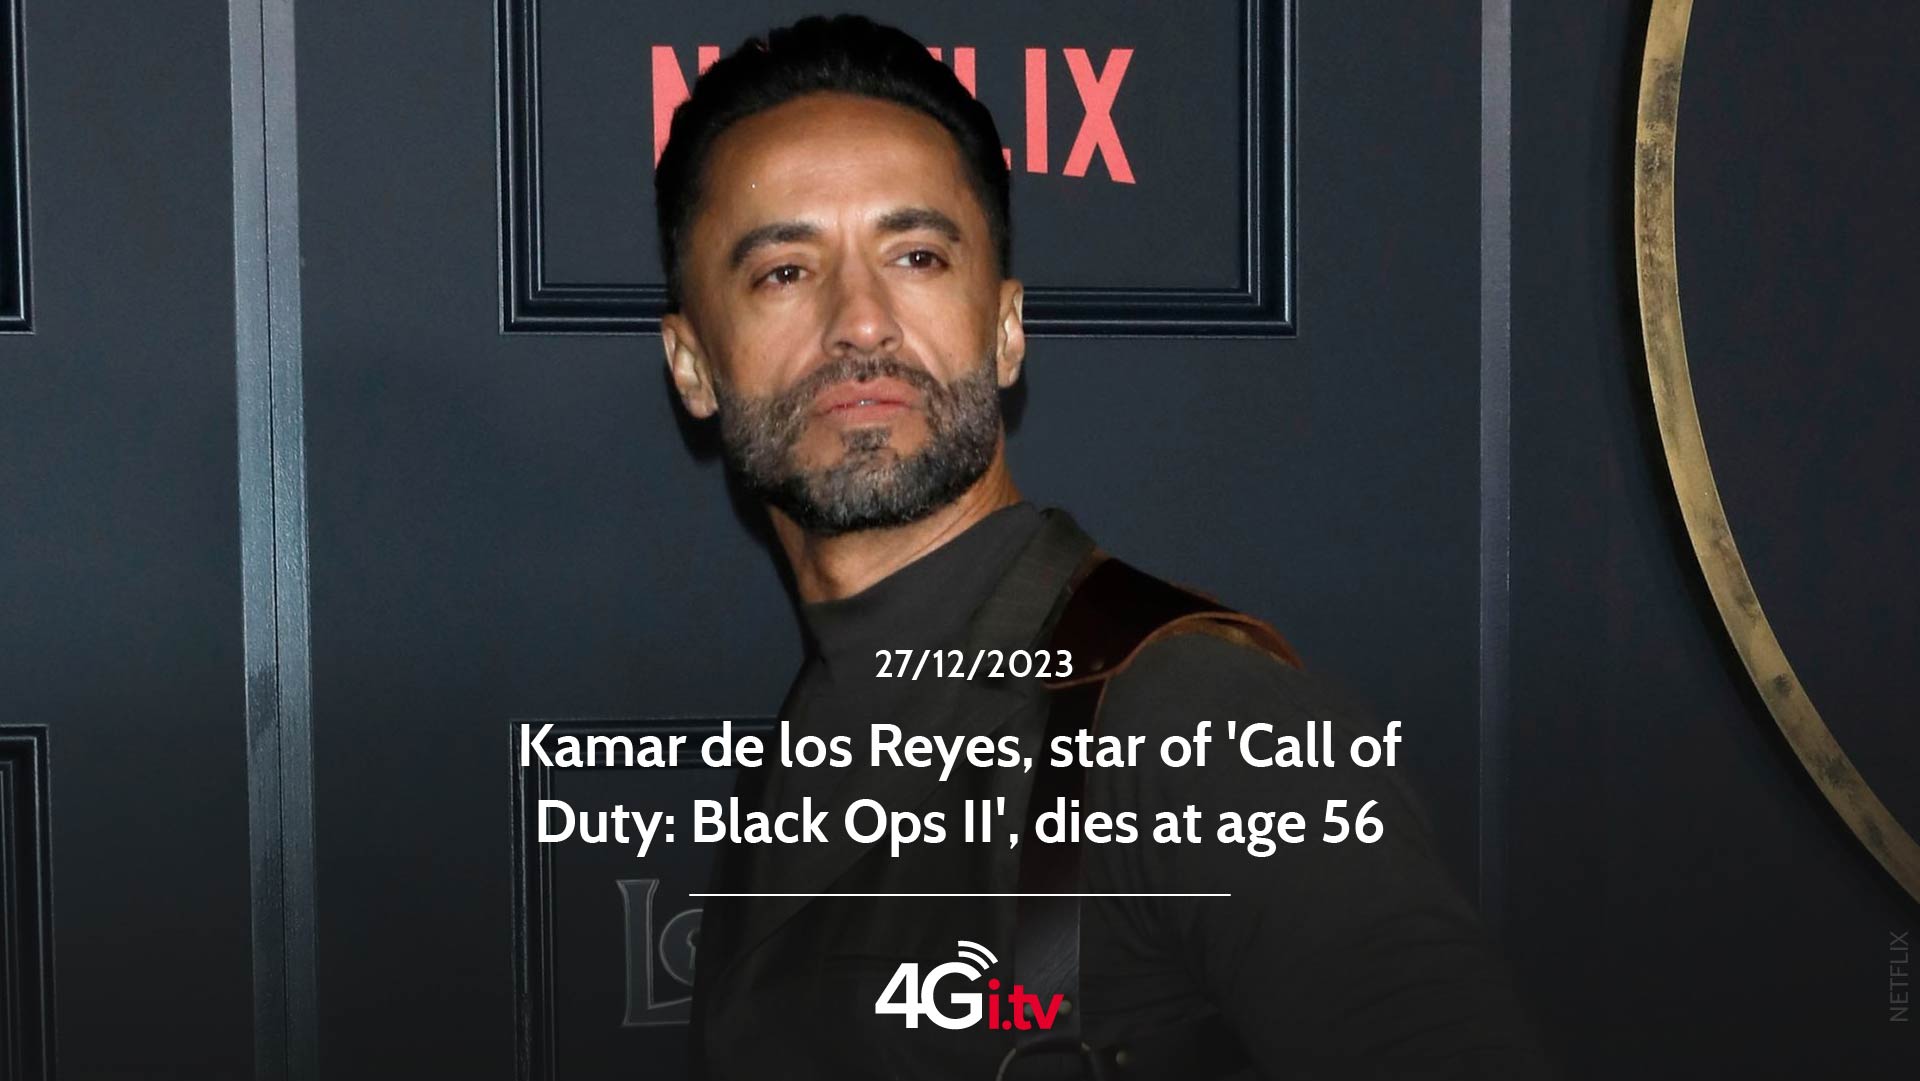 Подробнее о статье Kamar de los Reyes, star of ‘Call of Duty: Black Ops II’, dies at age 56